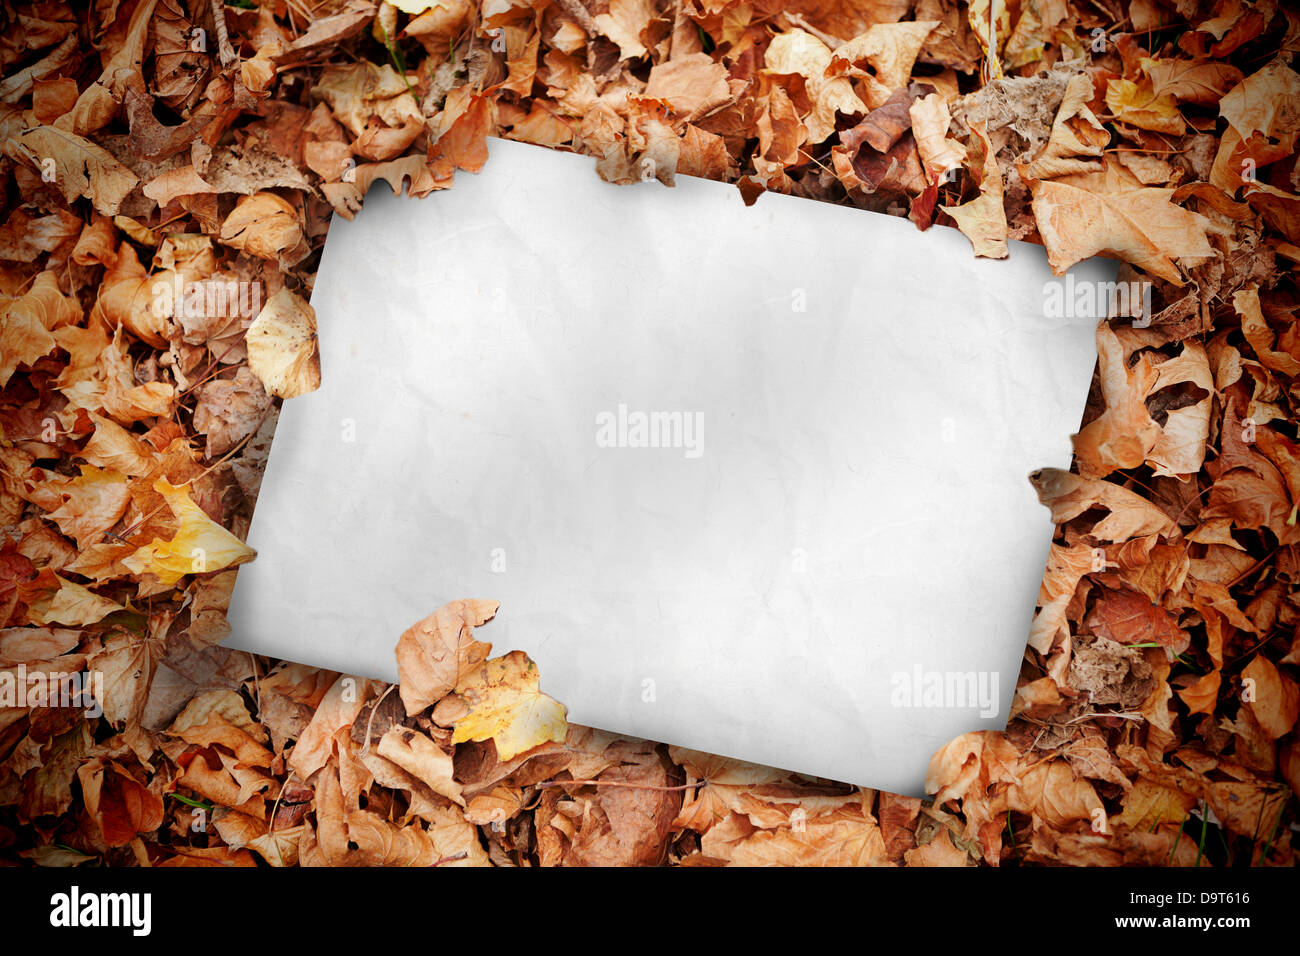 Póster en blanco enterrado en hojas muertas Foto de stock